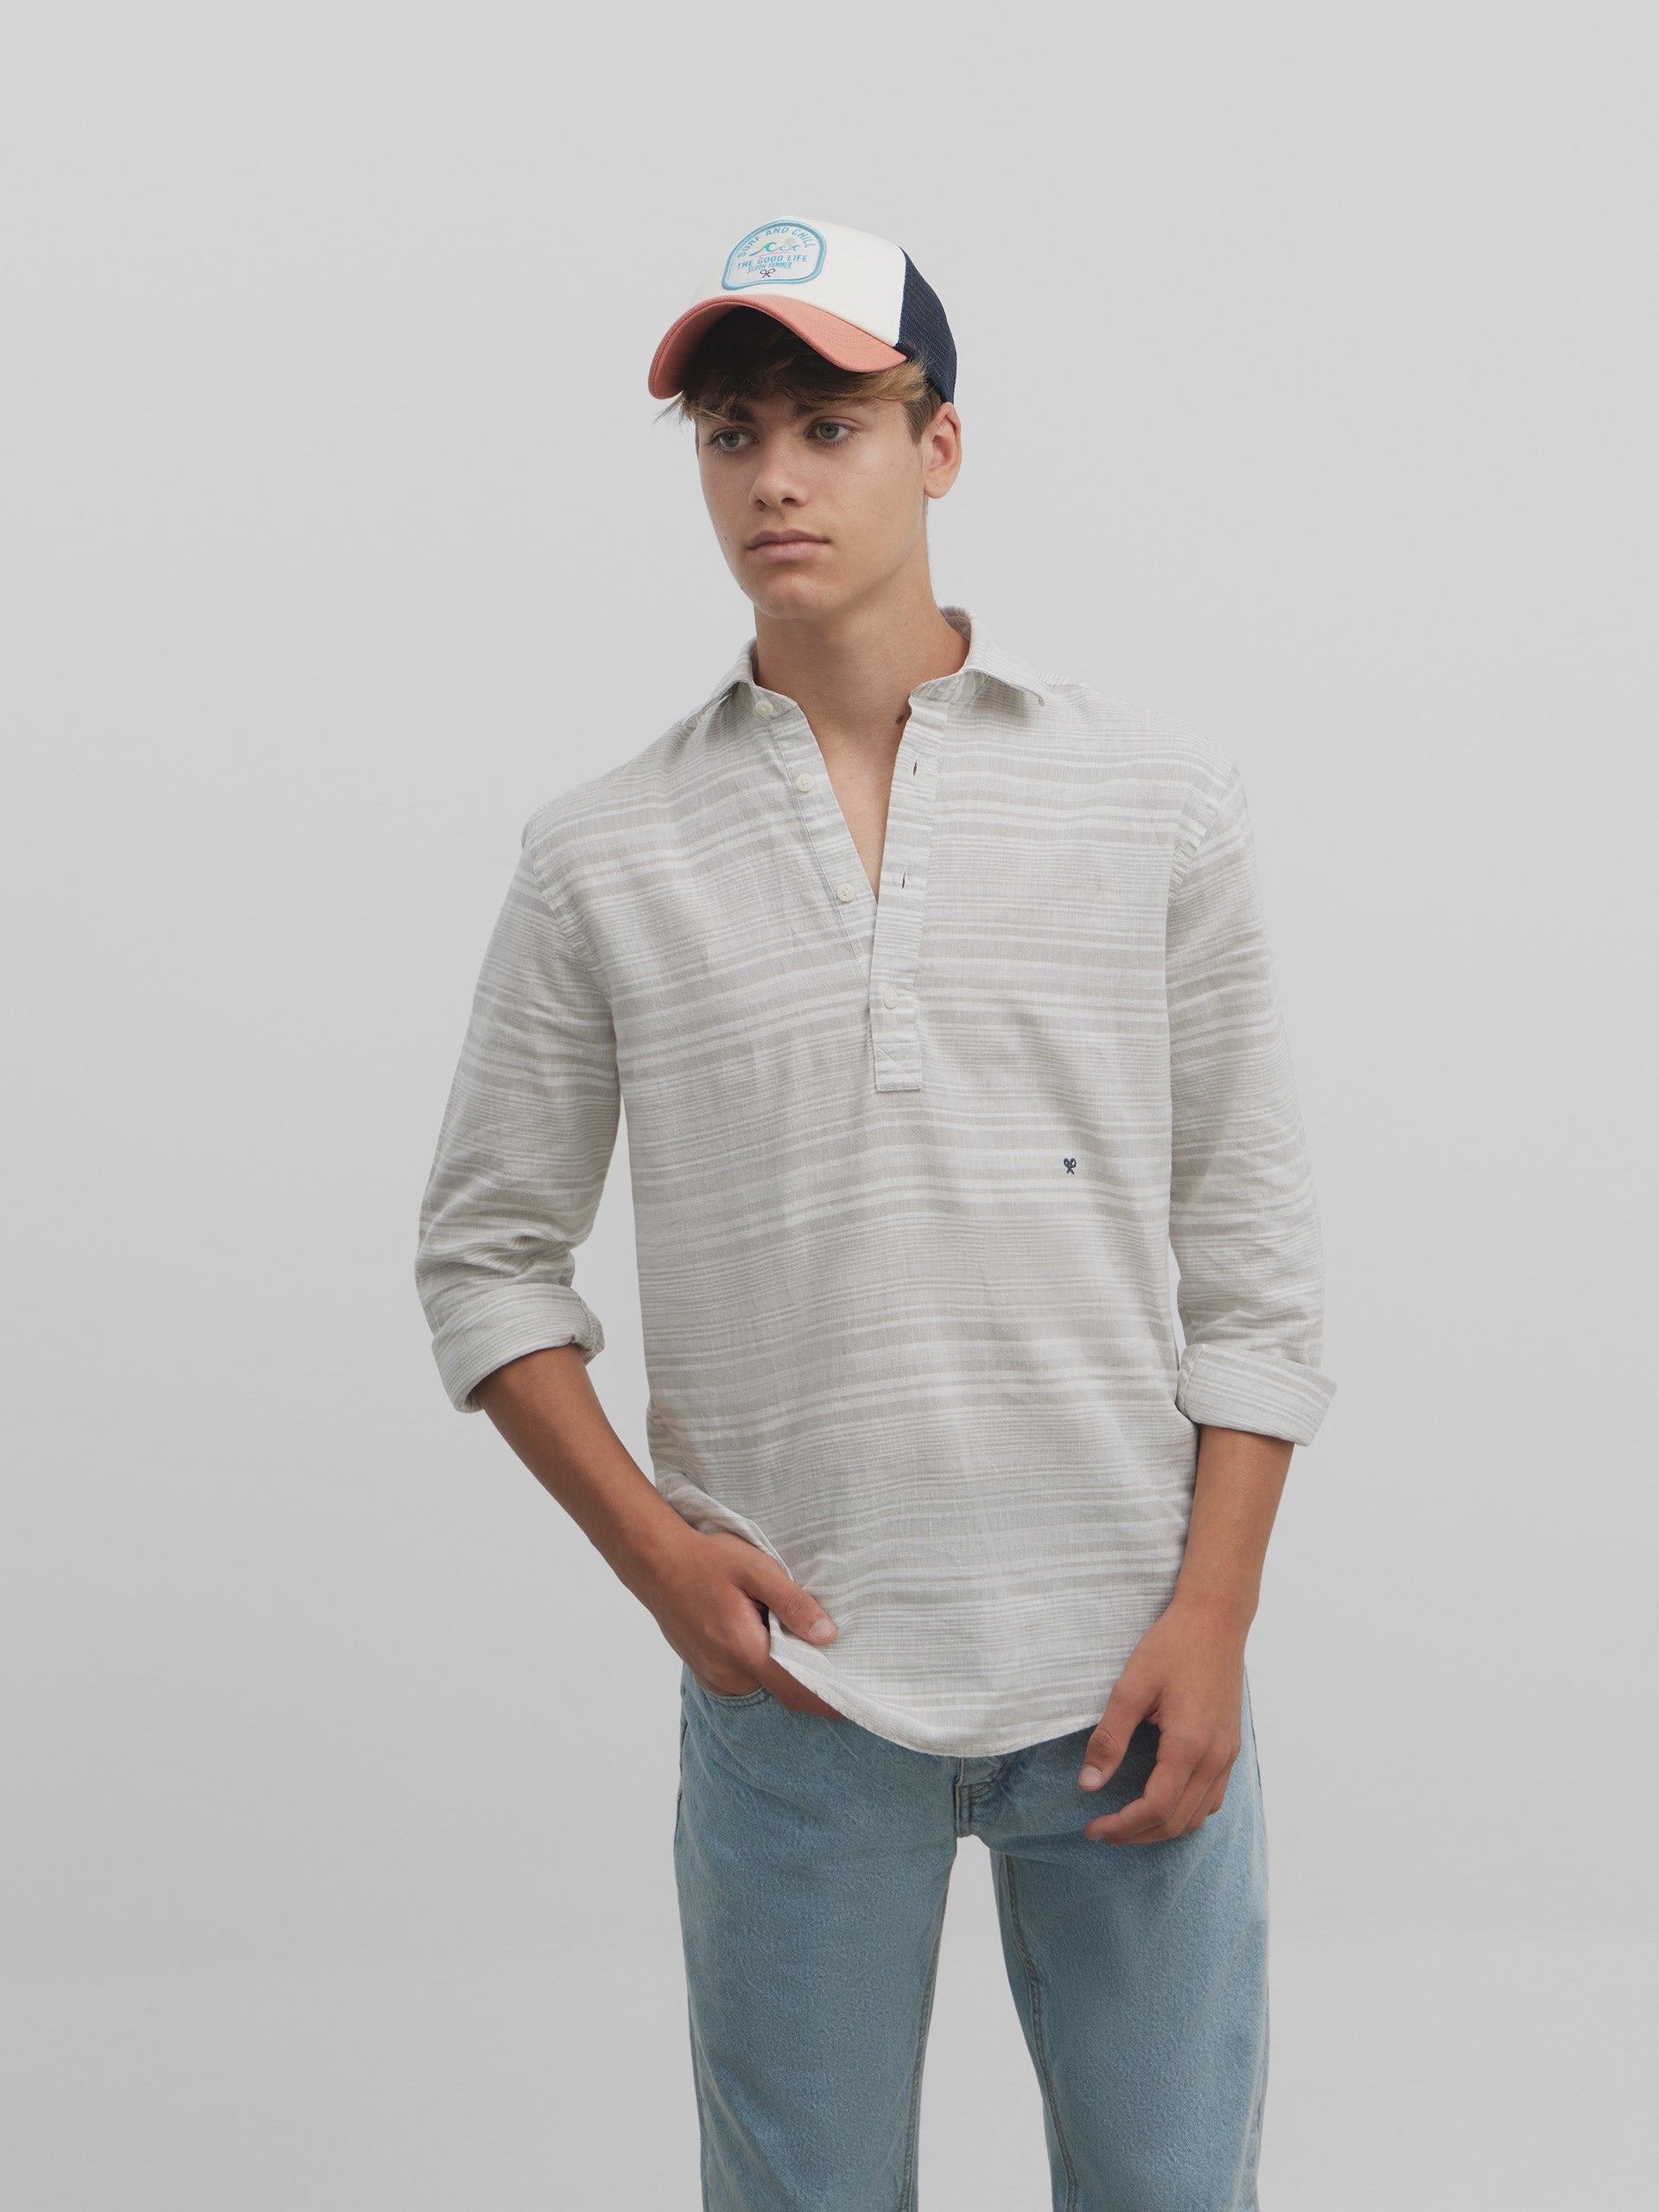 Silbon soft sport t-shirt with irregular gray stripes